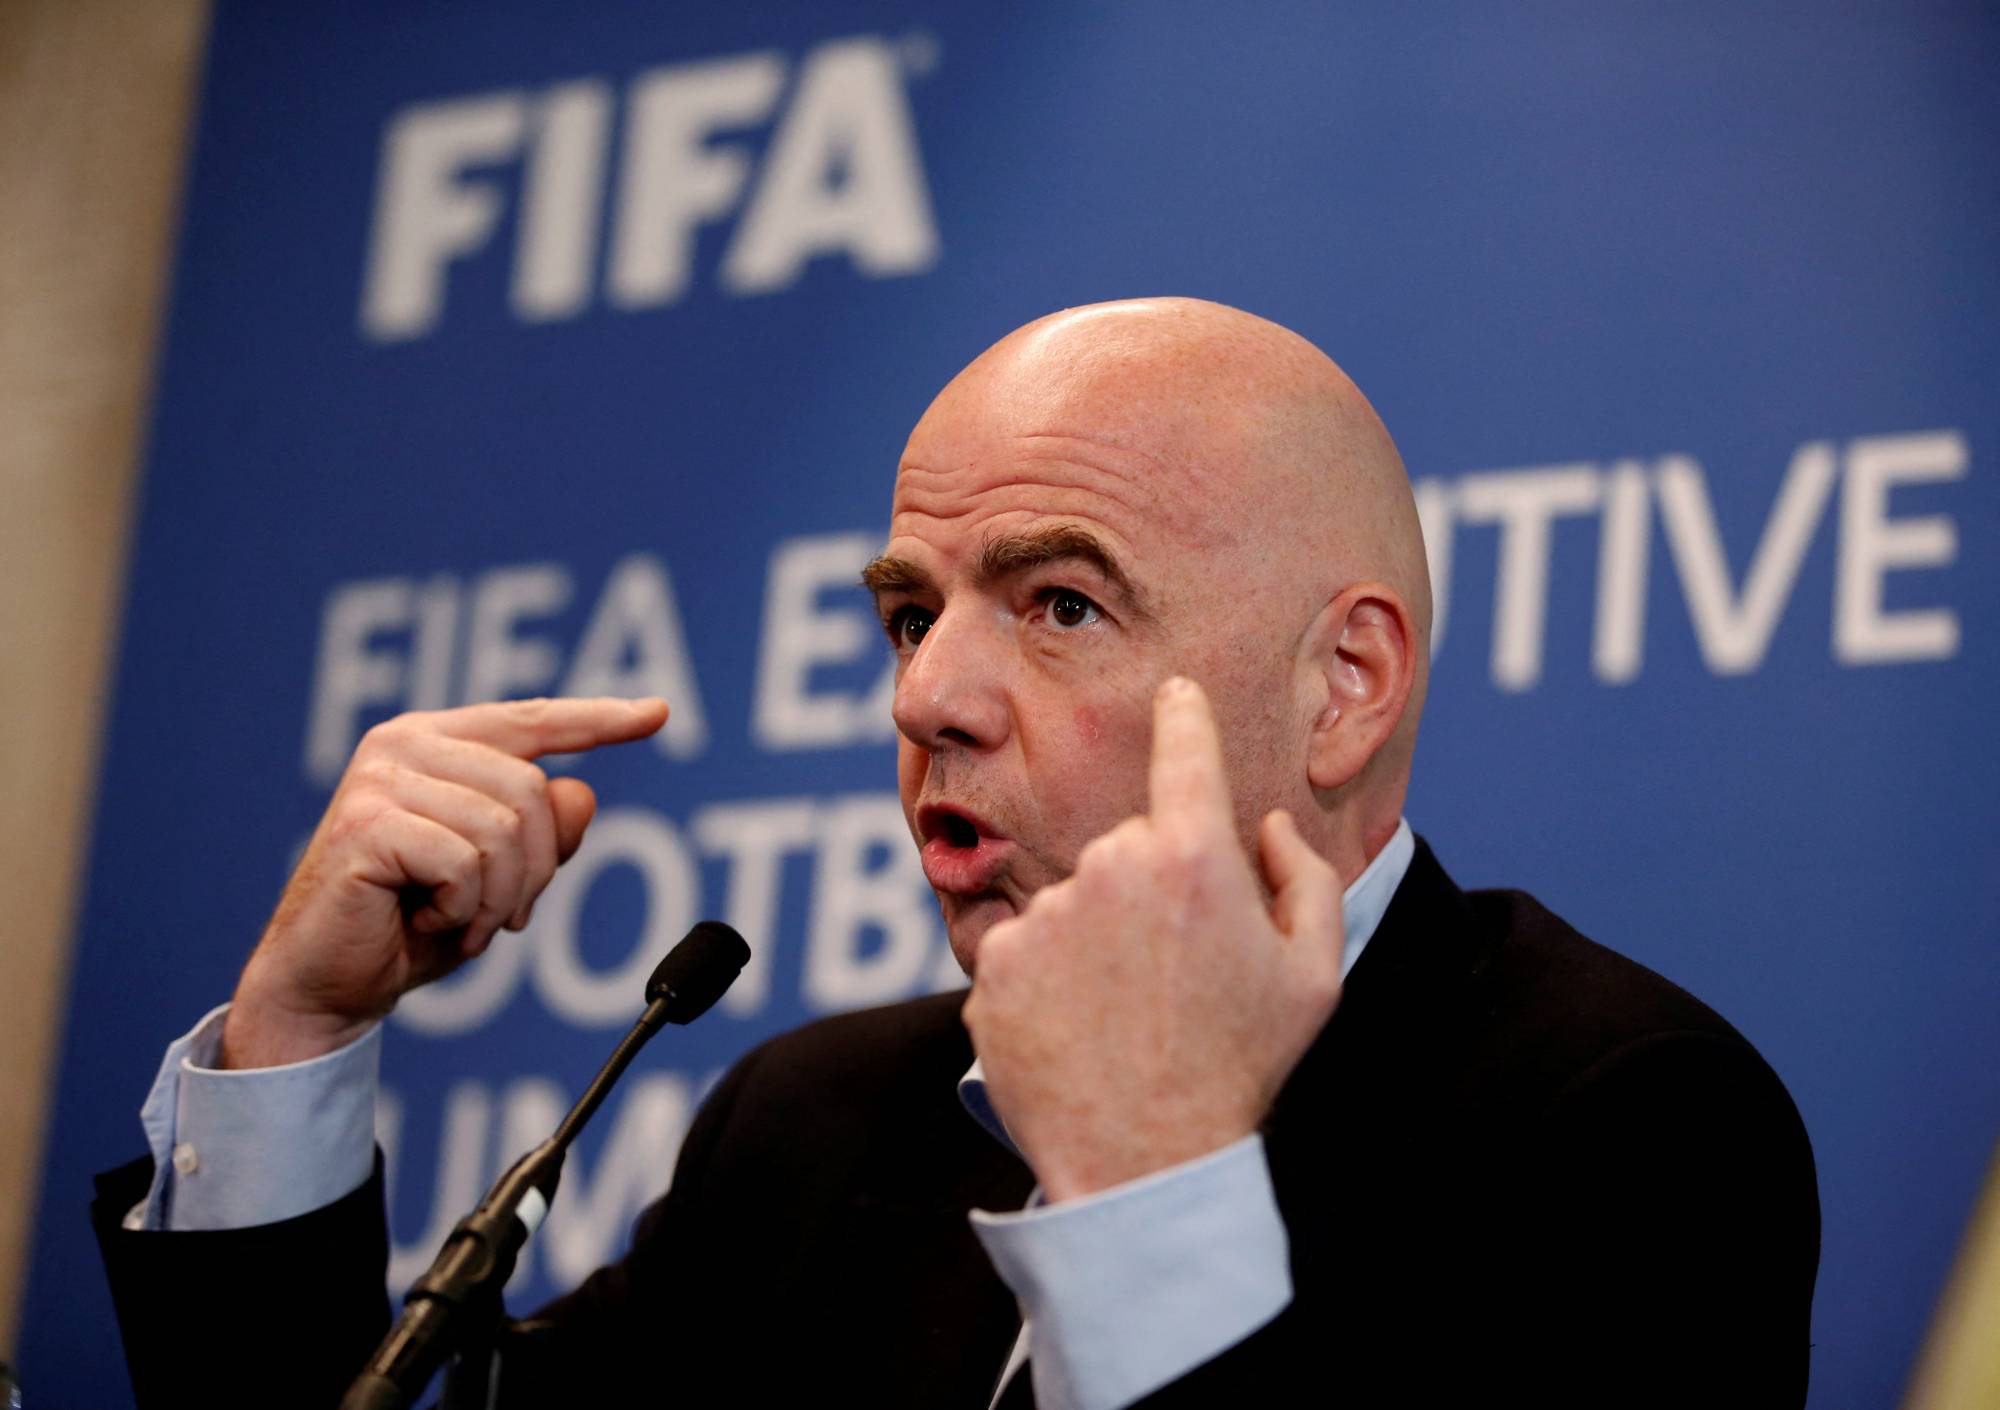 Reagimi i fuqishëm i presidentit të FIFA-s pas tragjedisë në Indonezi